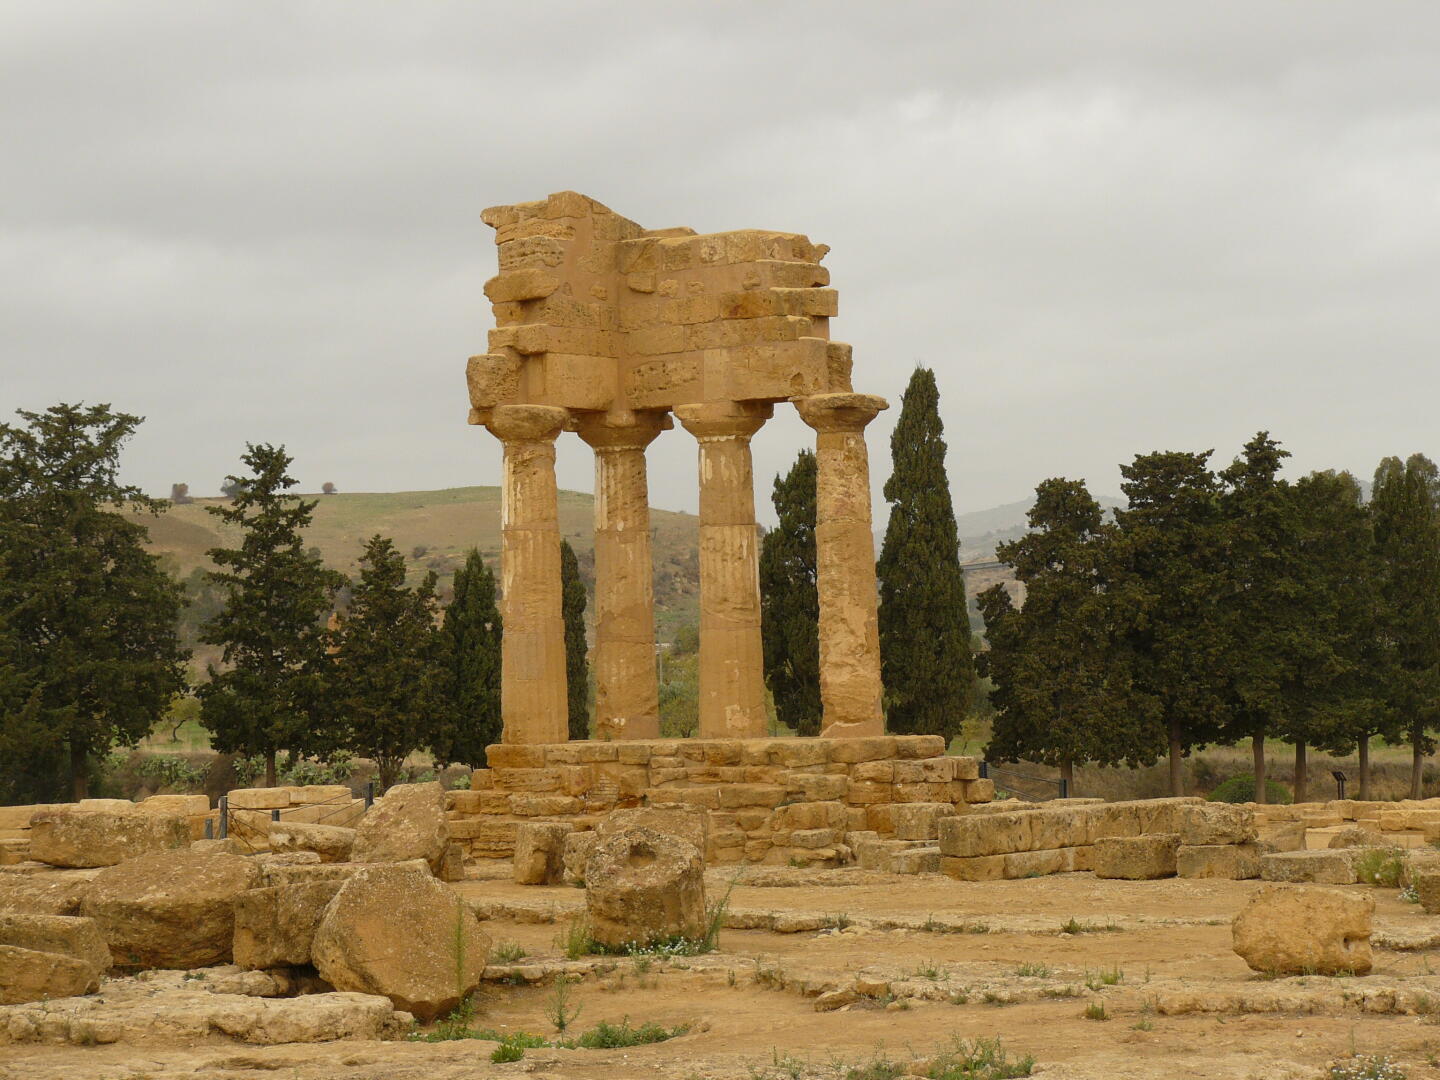 Rekonstruktion des Dioskuren-Tempels   im Tal der Tempel in Agrigento. Erstens war dieser Tempel vermutlich gar nicht den Dioskuren (Castor und Pollux) geweiht, und zweitens ist die Rekonstruktion fehlerhaft. Die vier Säulen wurden dennoch zu einem beliebten Fotomotiv.